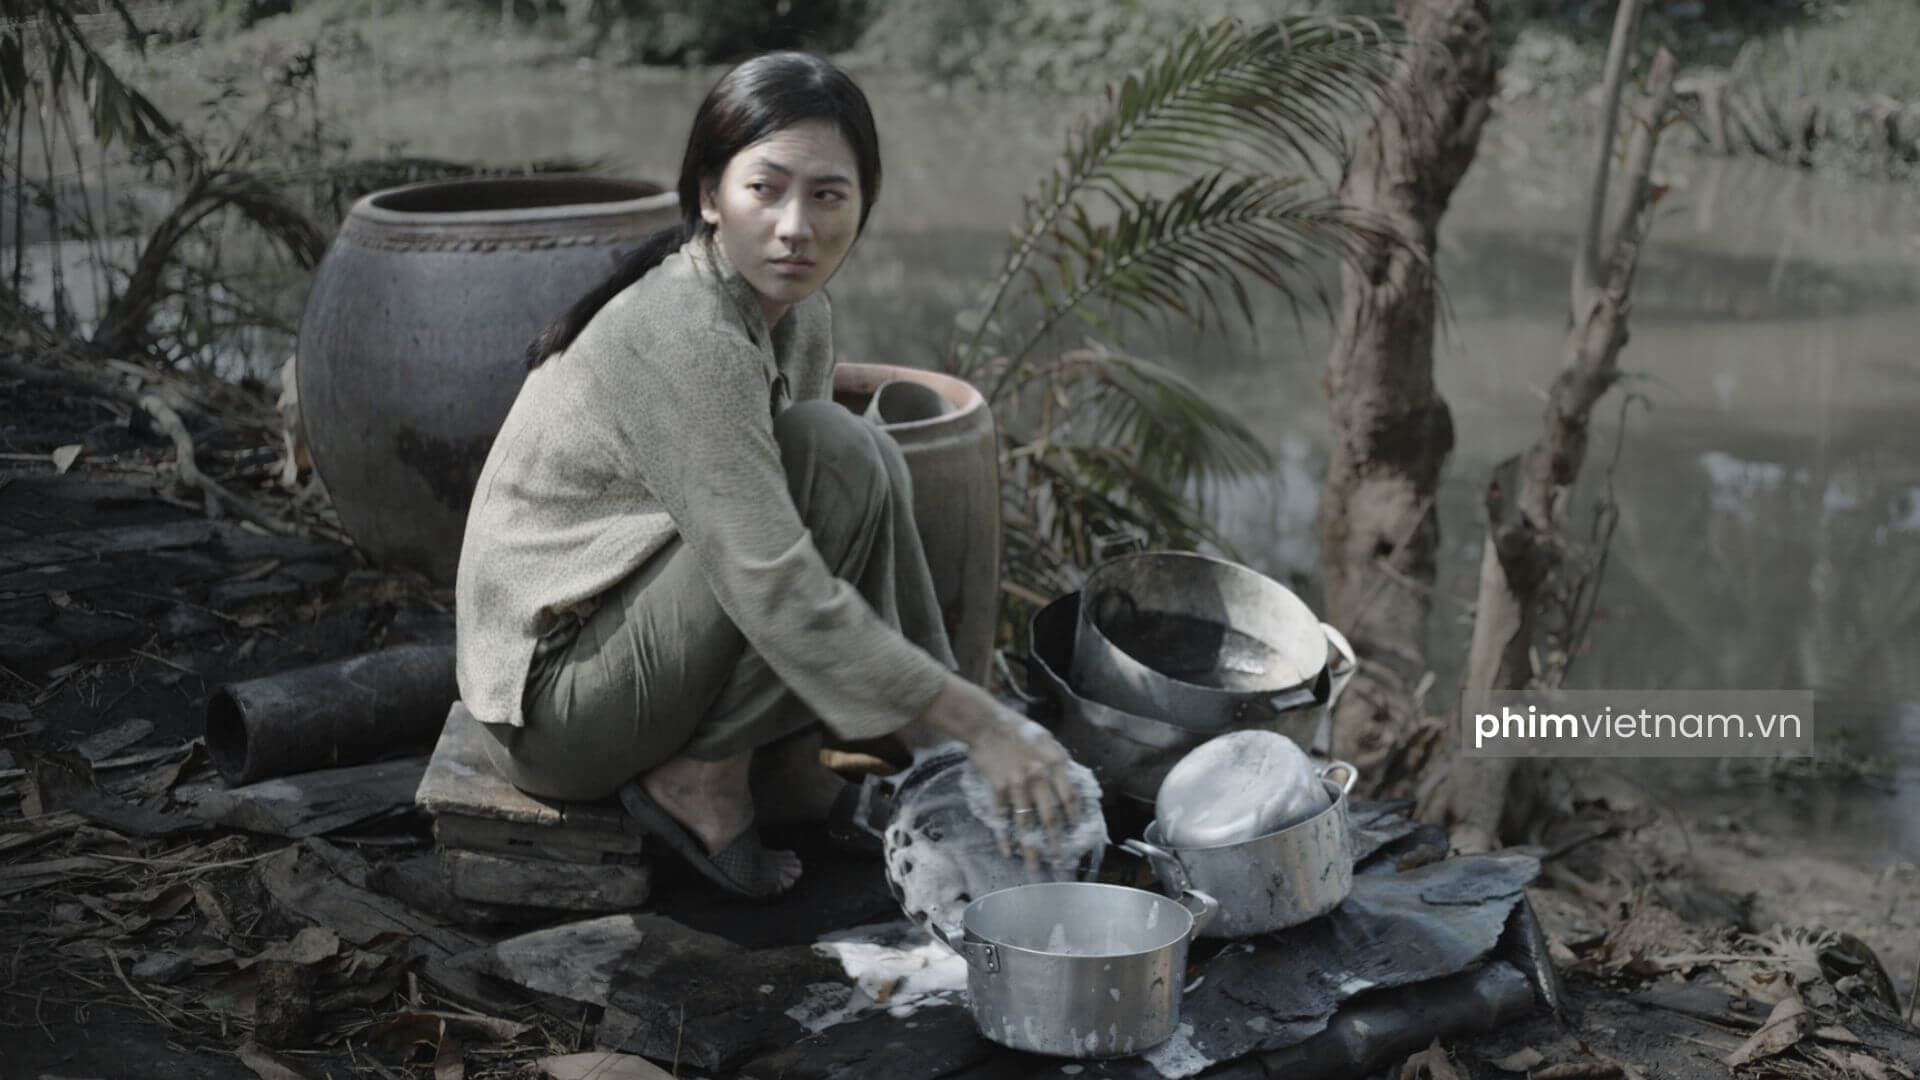 Diễn viên Phương Anh Đào trong phim "Tro tàn rực rỡ"